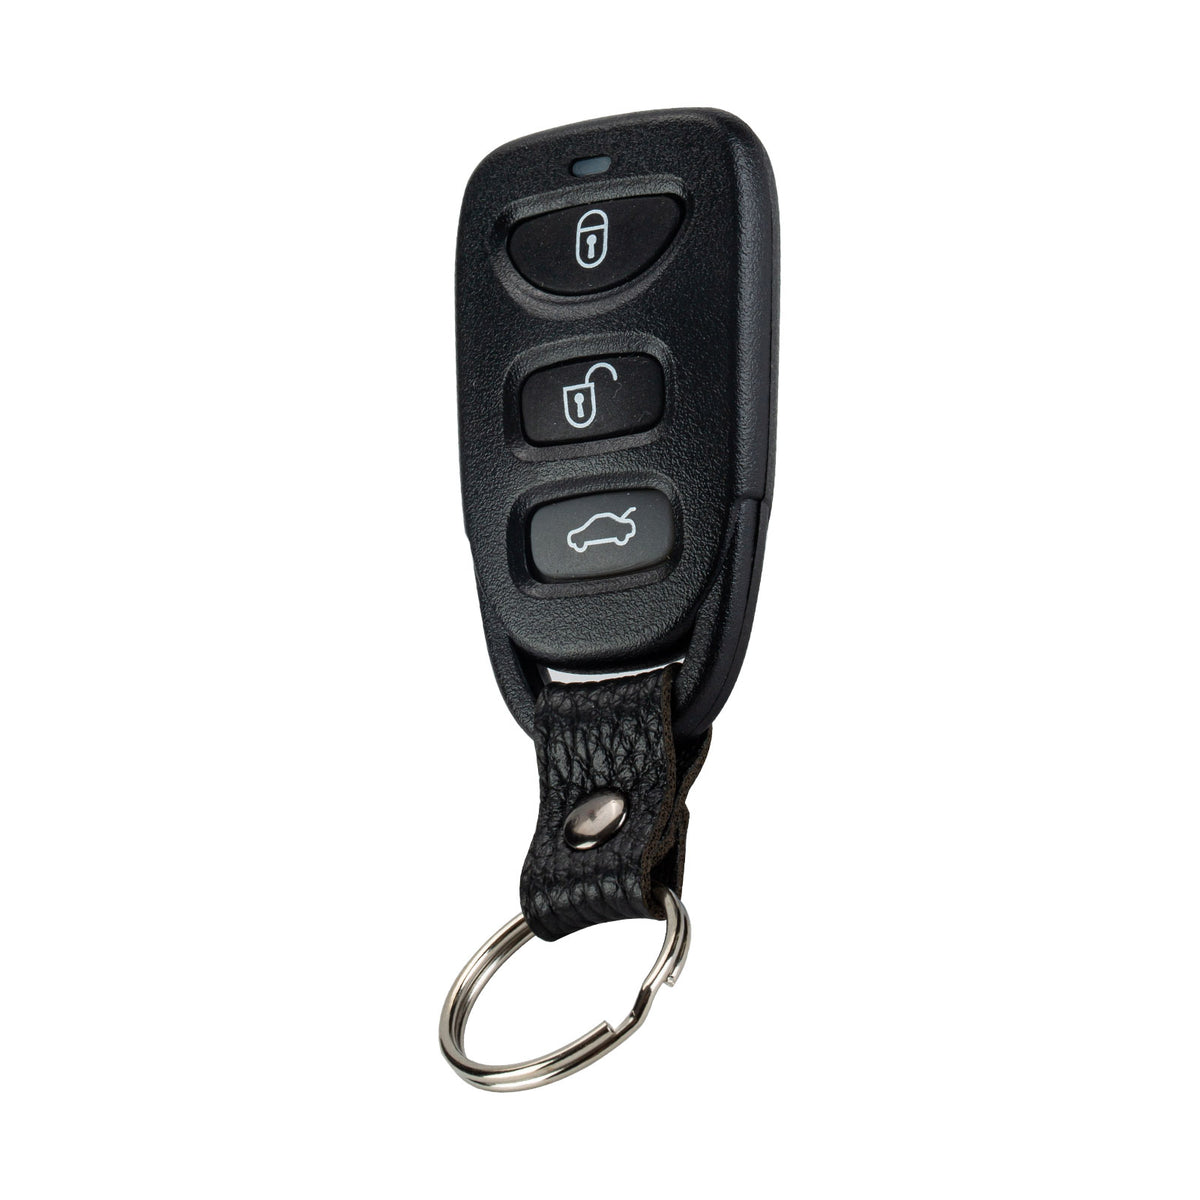 Keyless Entry Remote Control Car Key Fob for 2013, 2014, 2015, 2016, 2017 Hyundai Elantra GT 2011-2014 Accent Remote TQ8RKE-3F03